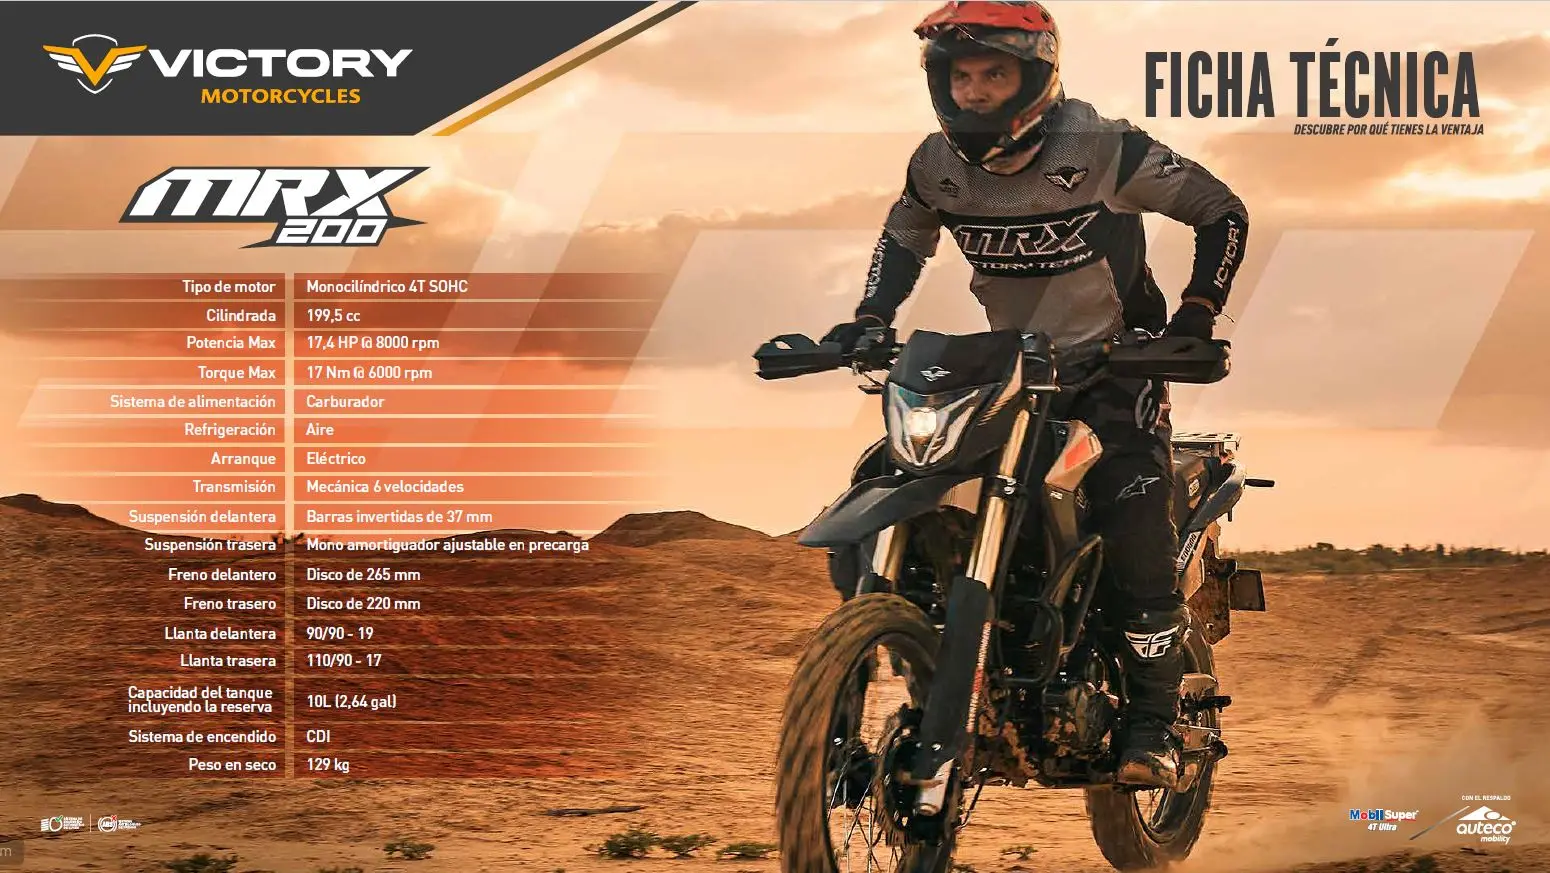 Ficha técnica moto doble propósito Auteco Victory MRX 200